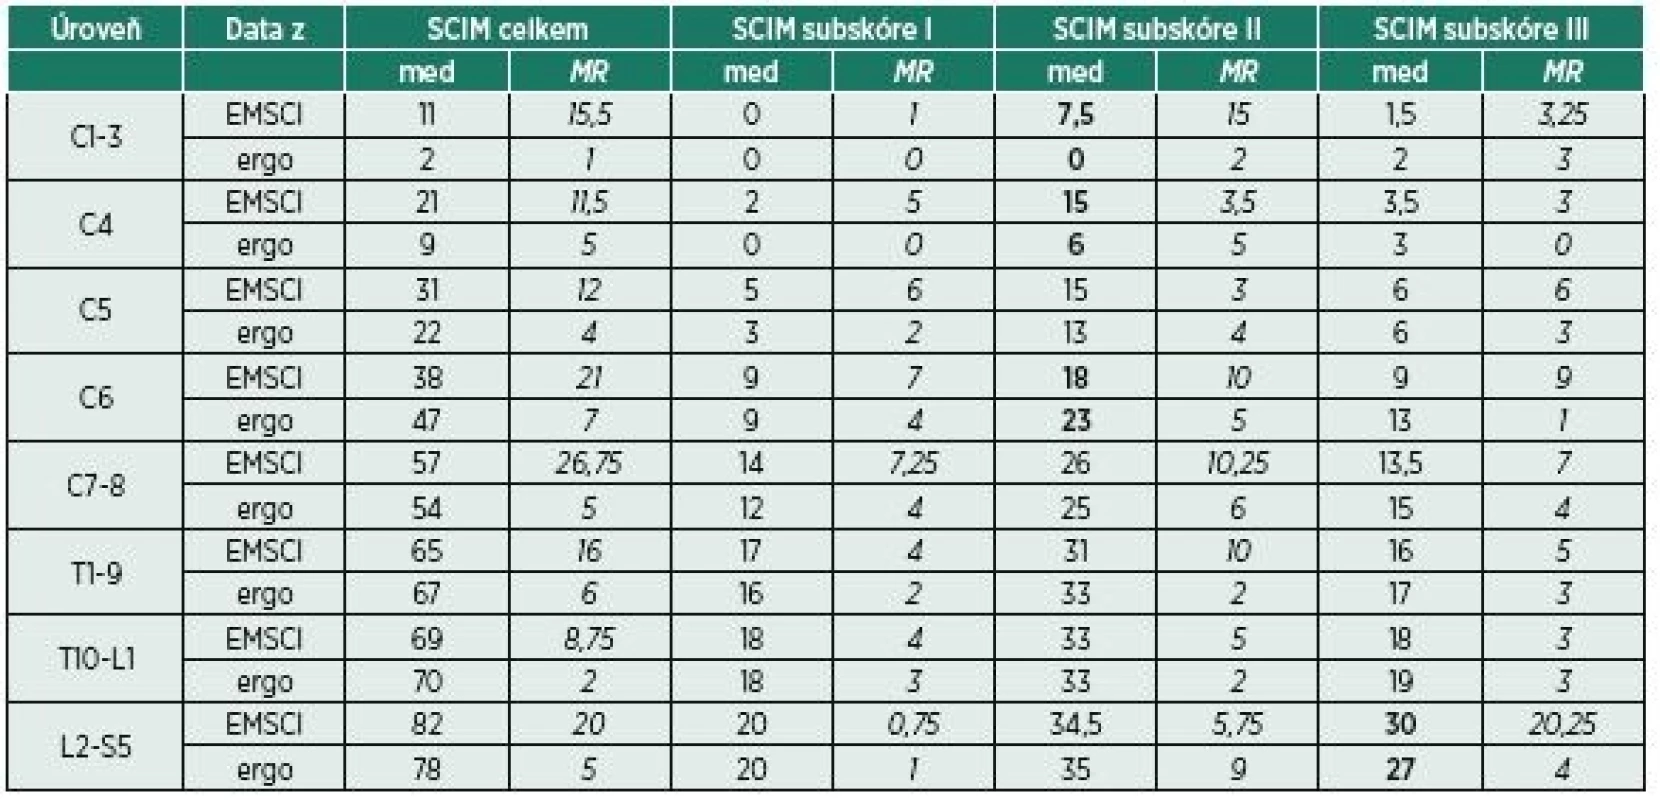 Porovnání výsledků SCIM ze studie EMSCI a z očekávaných výsledků od ergoterapeutů.